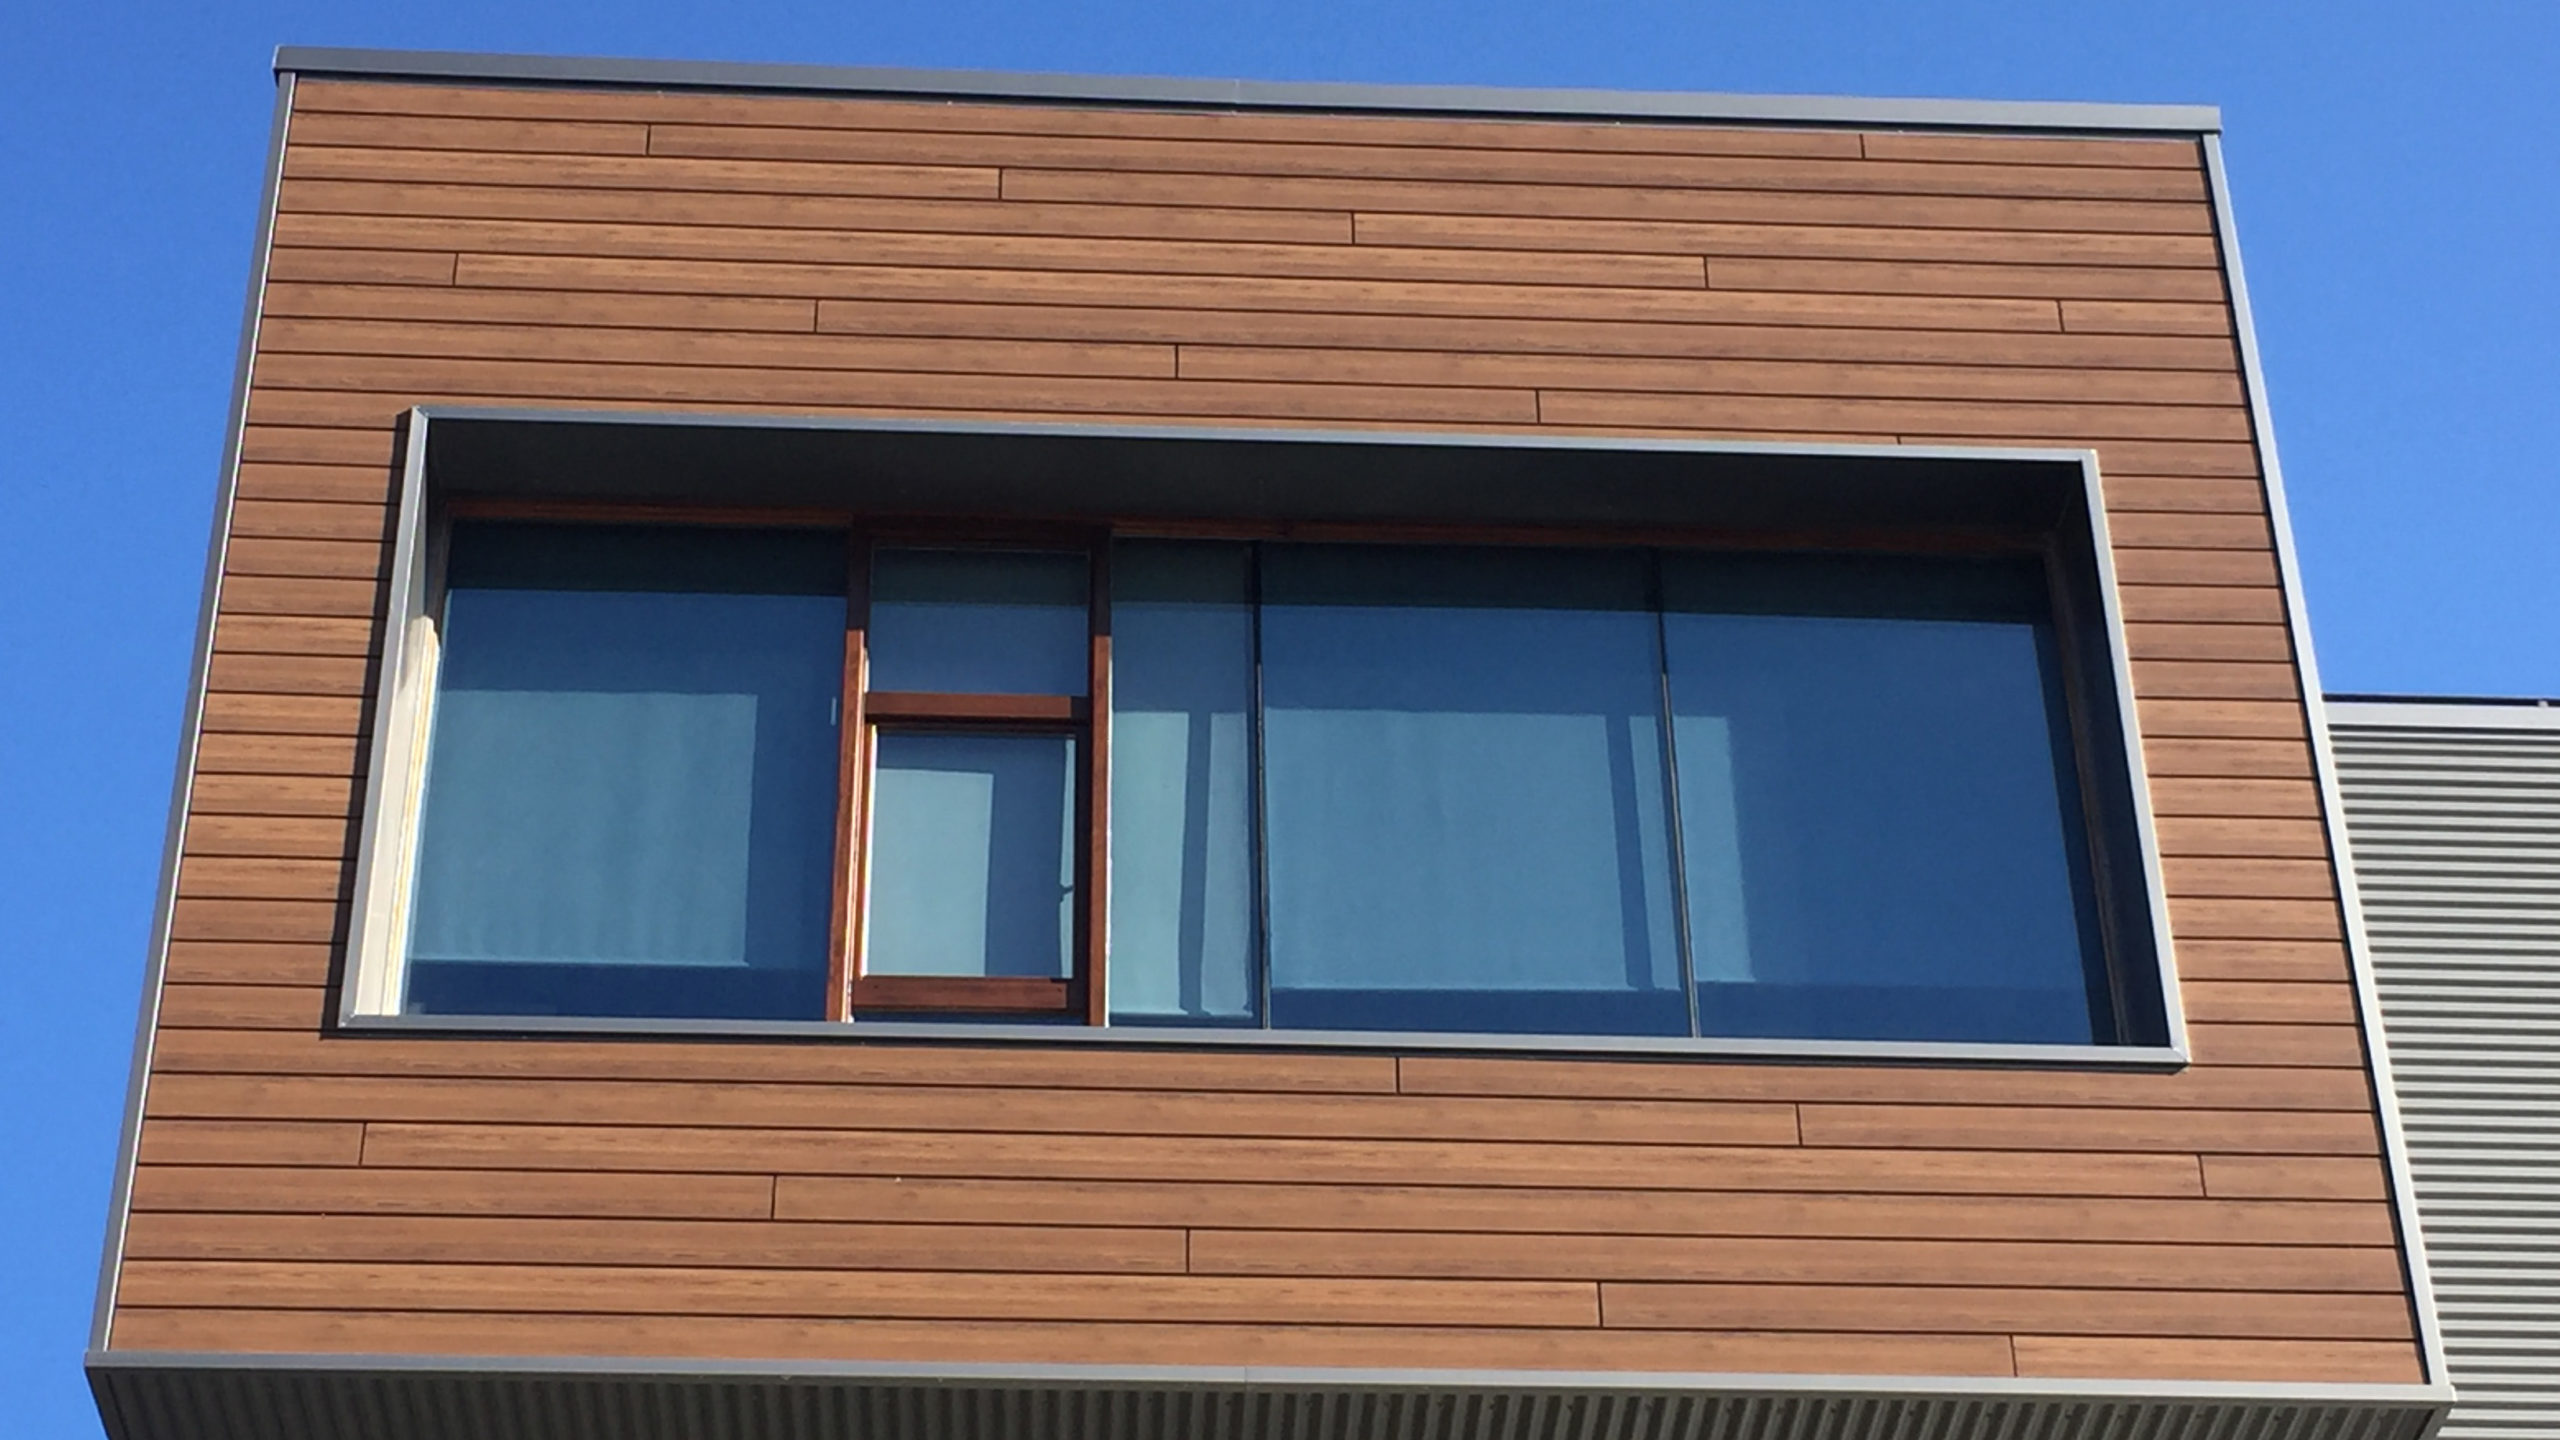 Bardage composite Werzalit Selekta REFINE en bois clair autour d'une grande fenêtre moderne